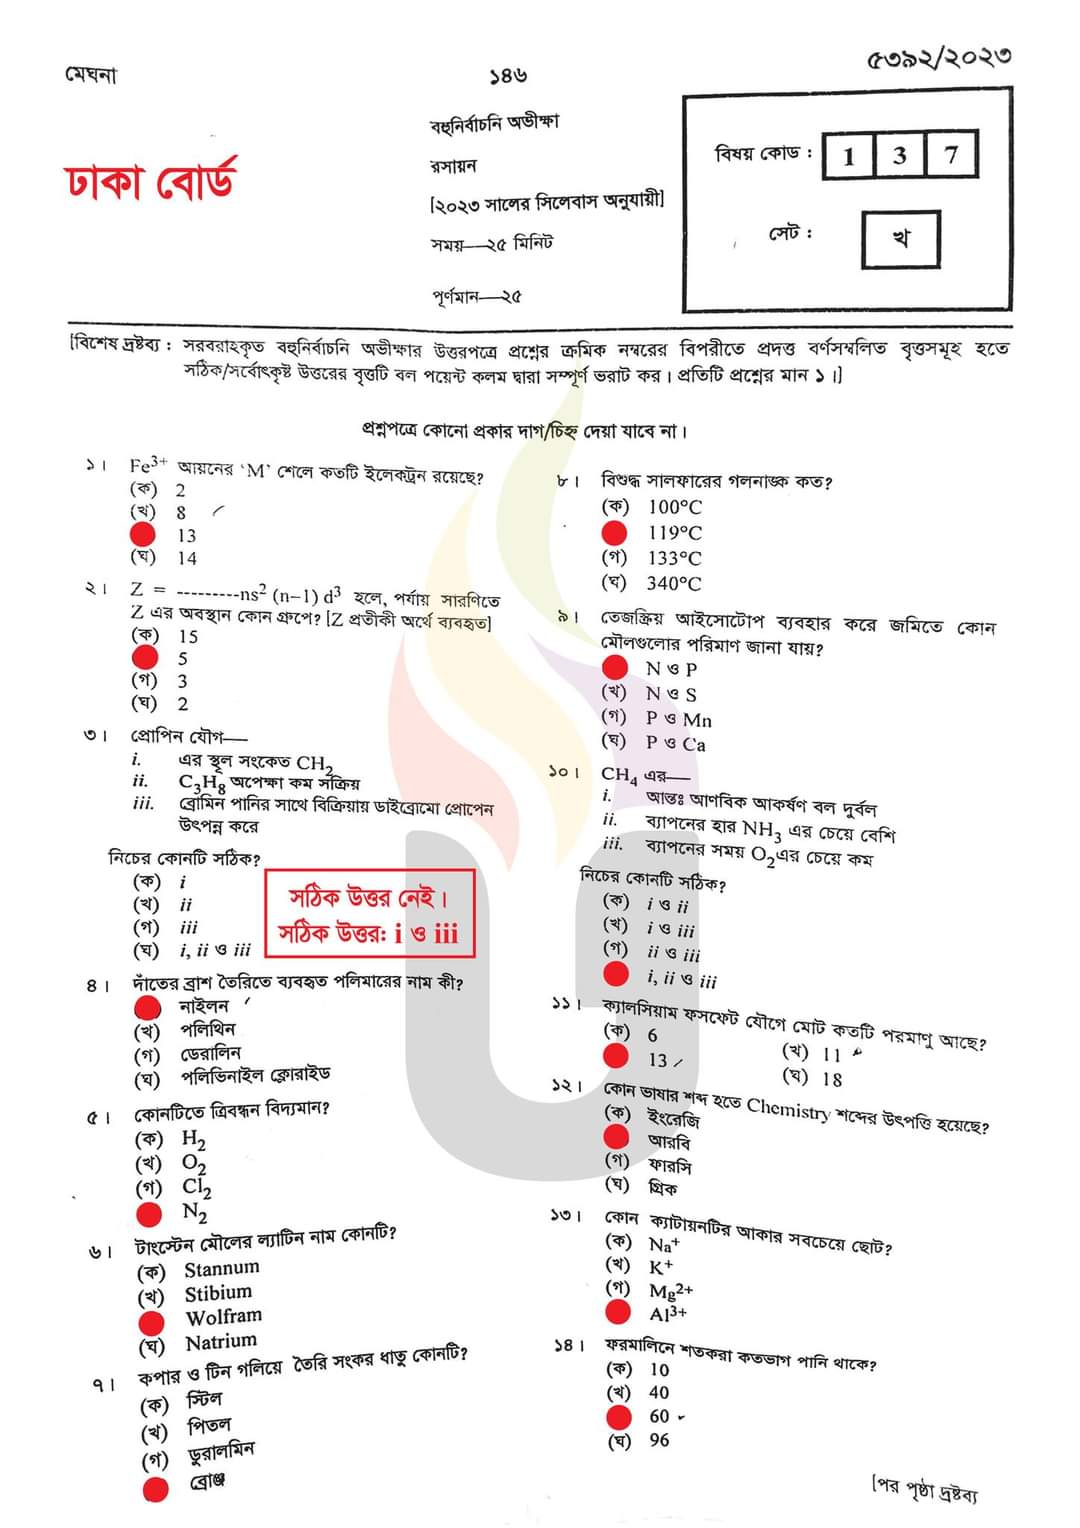 এসএসসি রসায়ন  প্রশ্ন ও উত্তর ২০২৩ ঢাকা | SSC chemistry Dhaka Board MCQ Question Answer 2023 | এসএসসি ঢাকা রসায়ন  বহুনির্বাচনি (MCQ) উত্তরমালা সমাধান ২০২৩